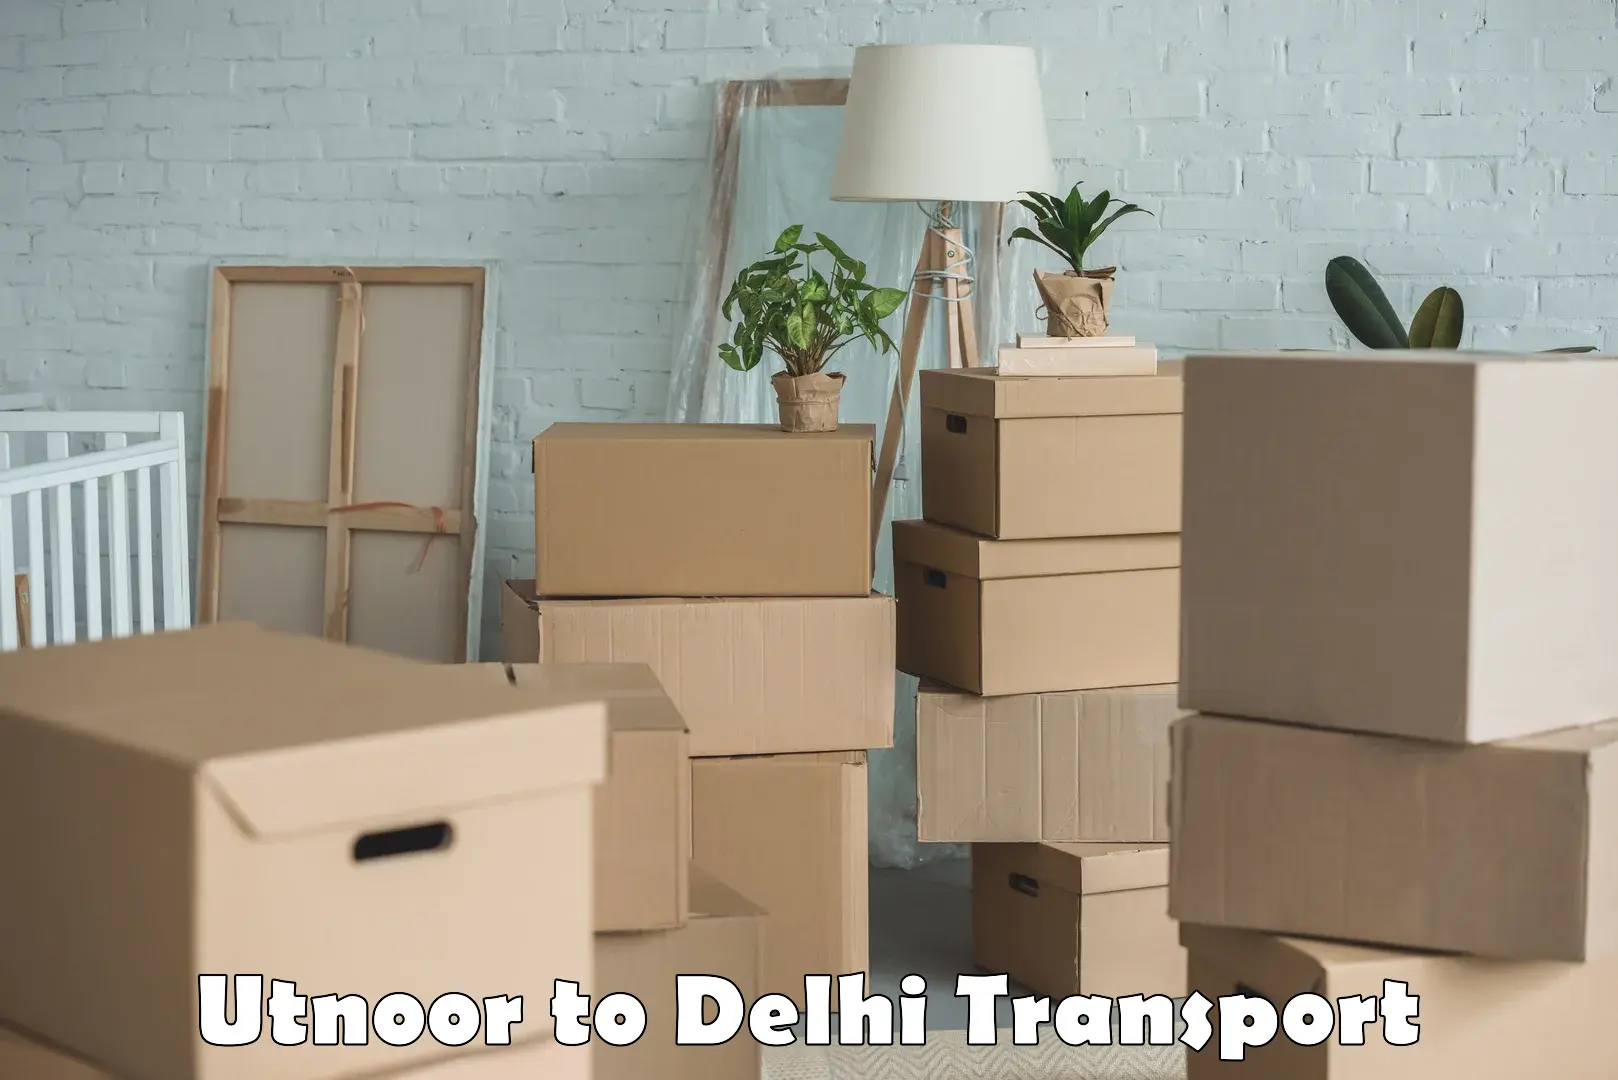 Container transport service Utnoor to IIT Delhi